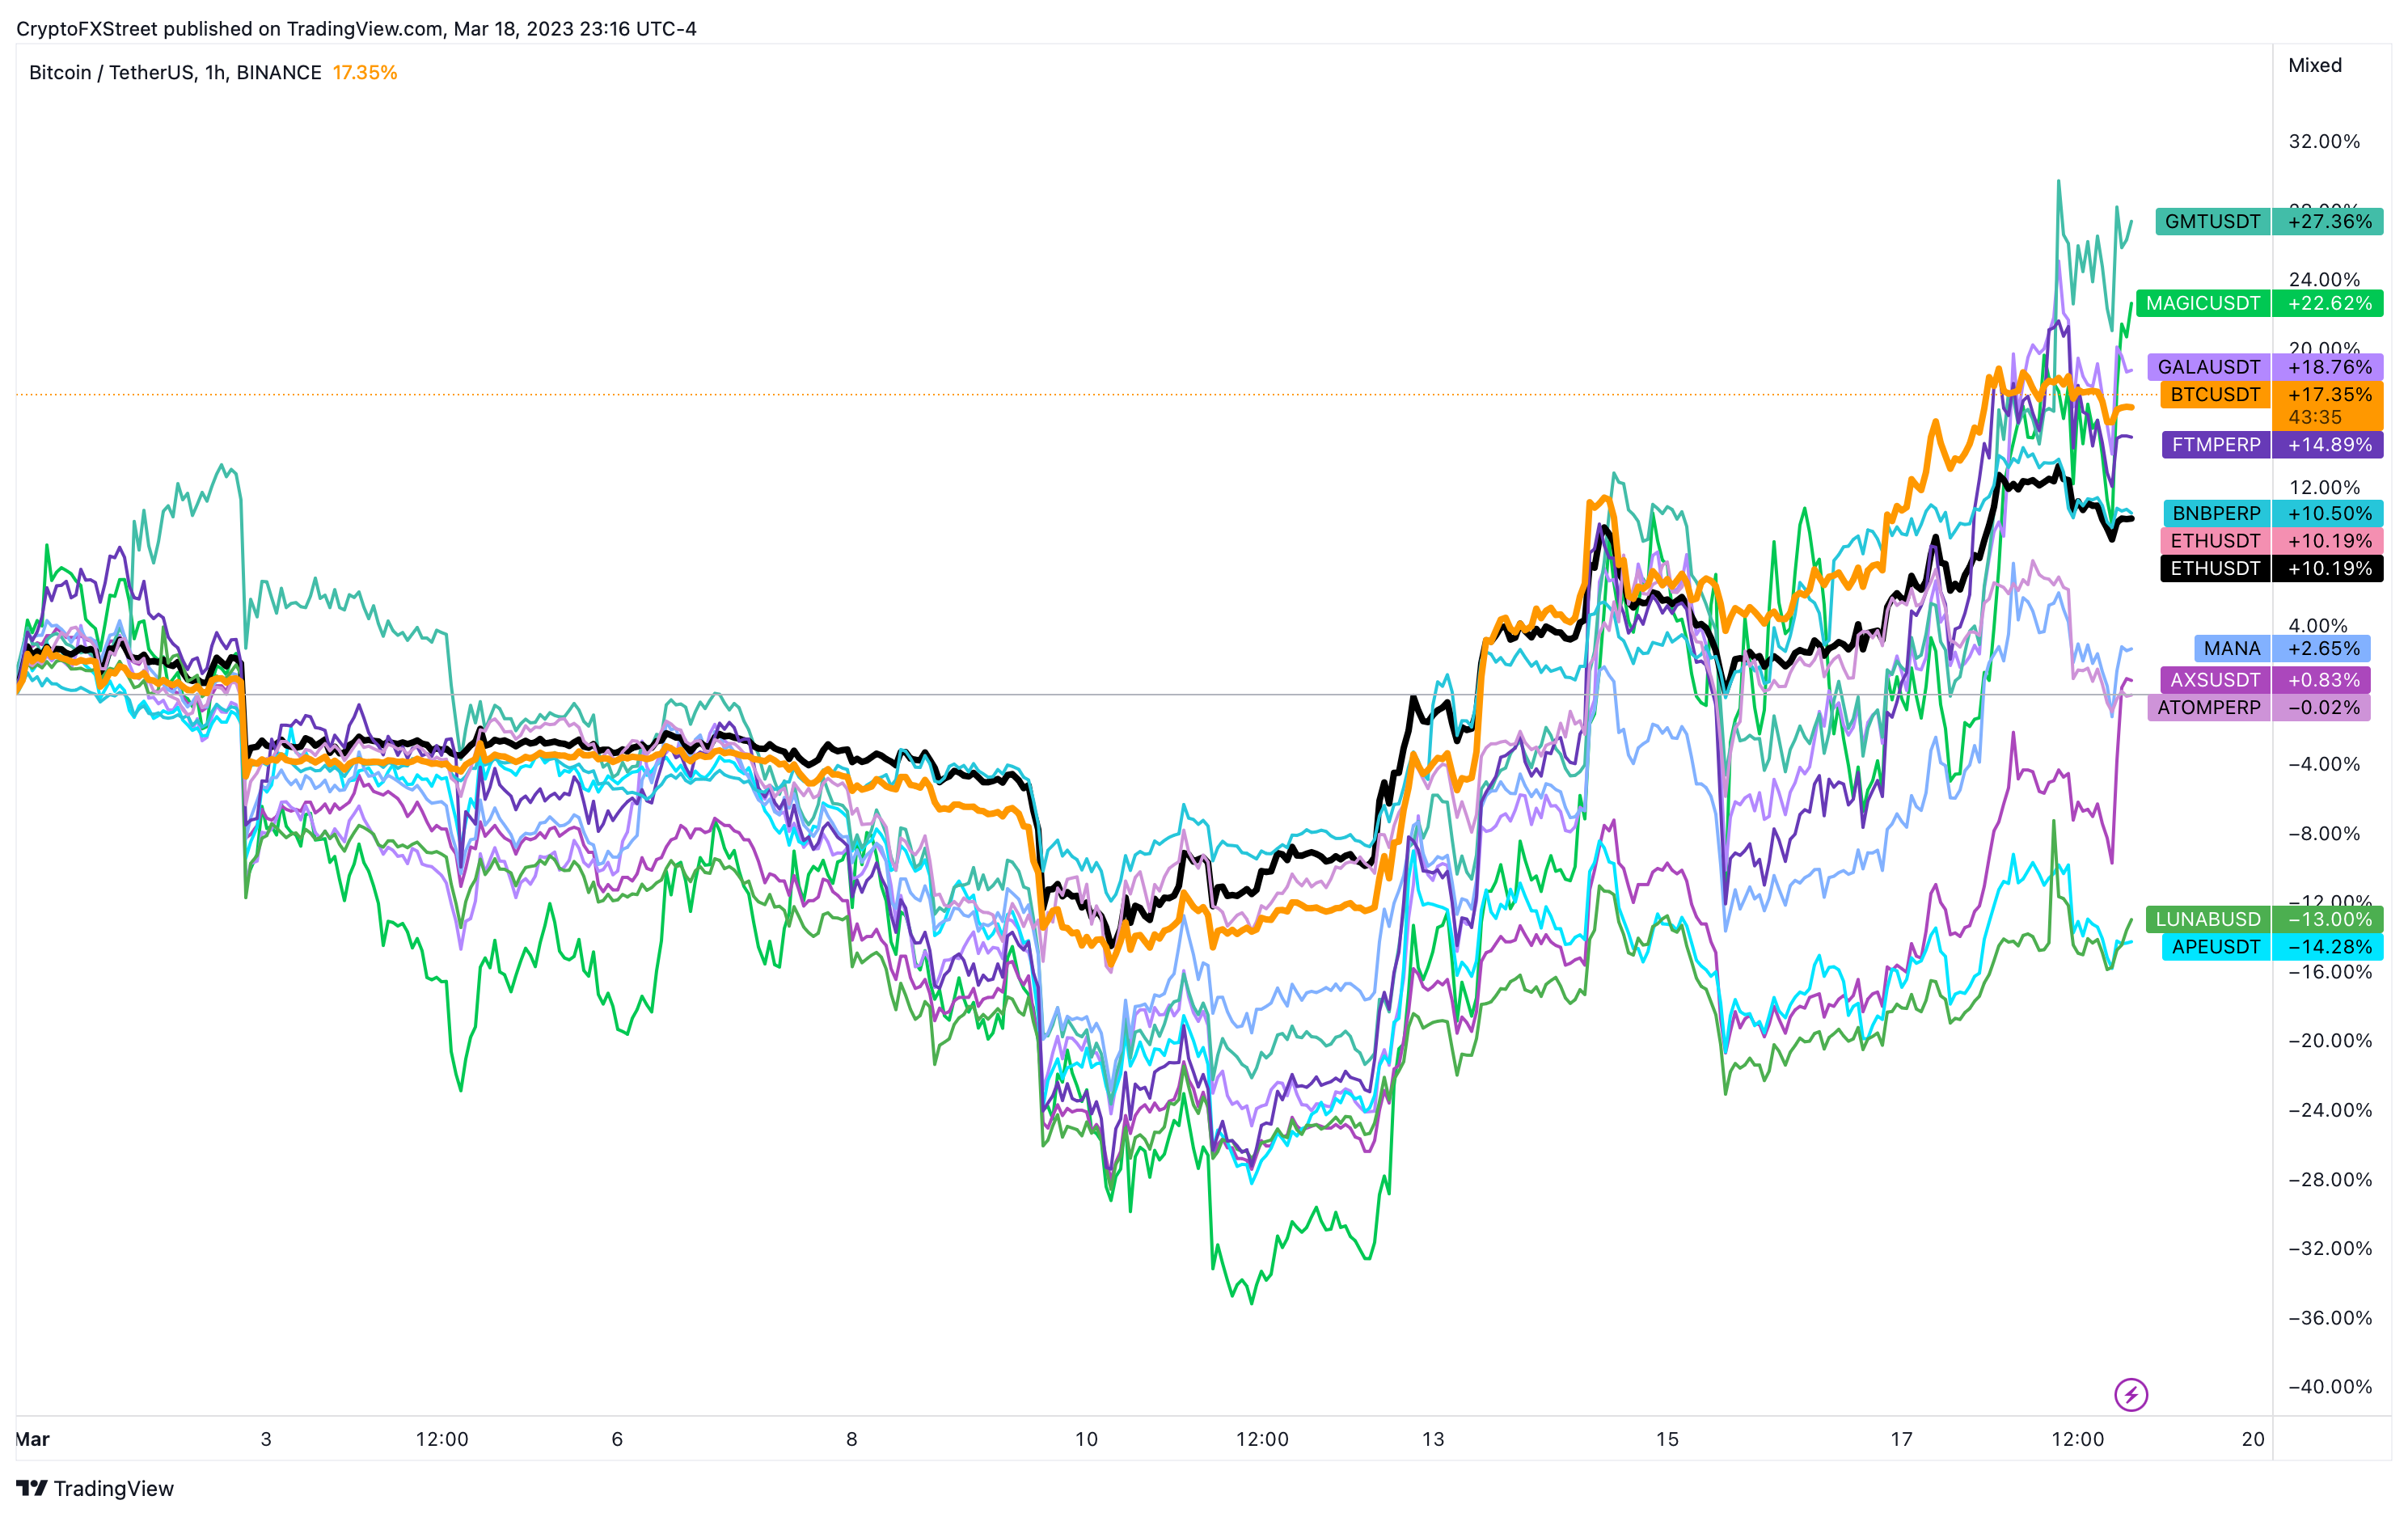 Gráfico de rendimiento de BTC vs. Altcoin